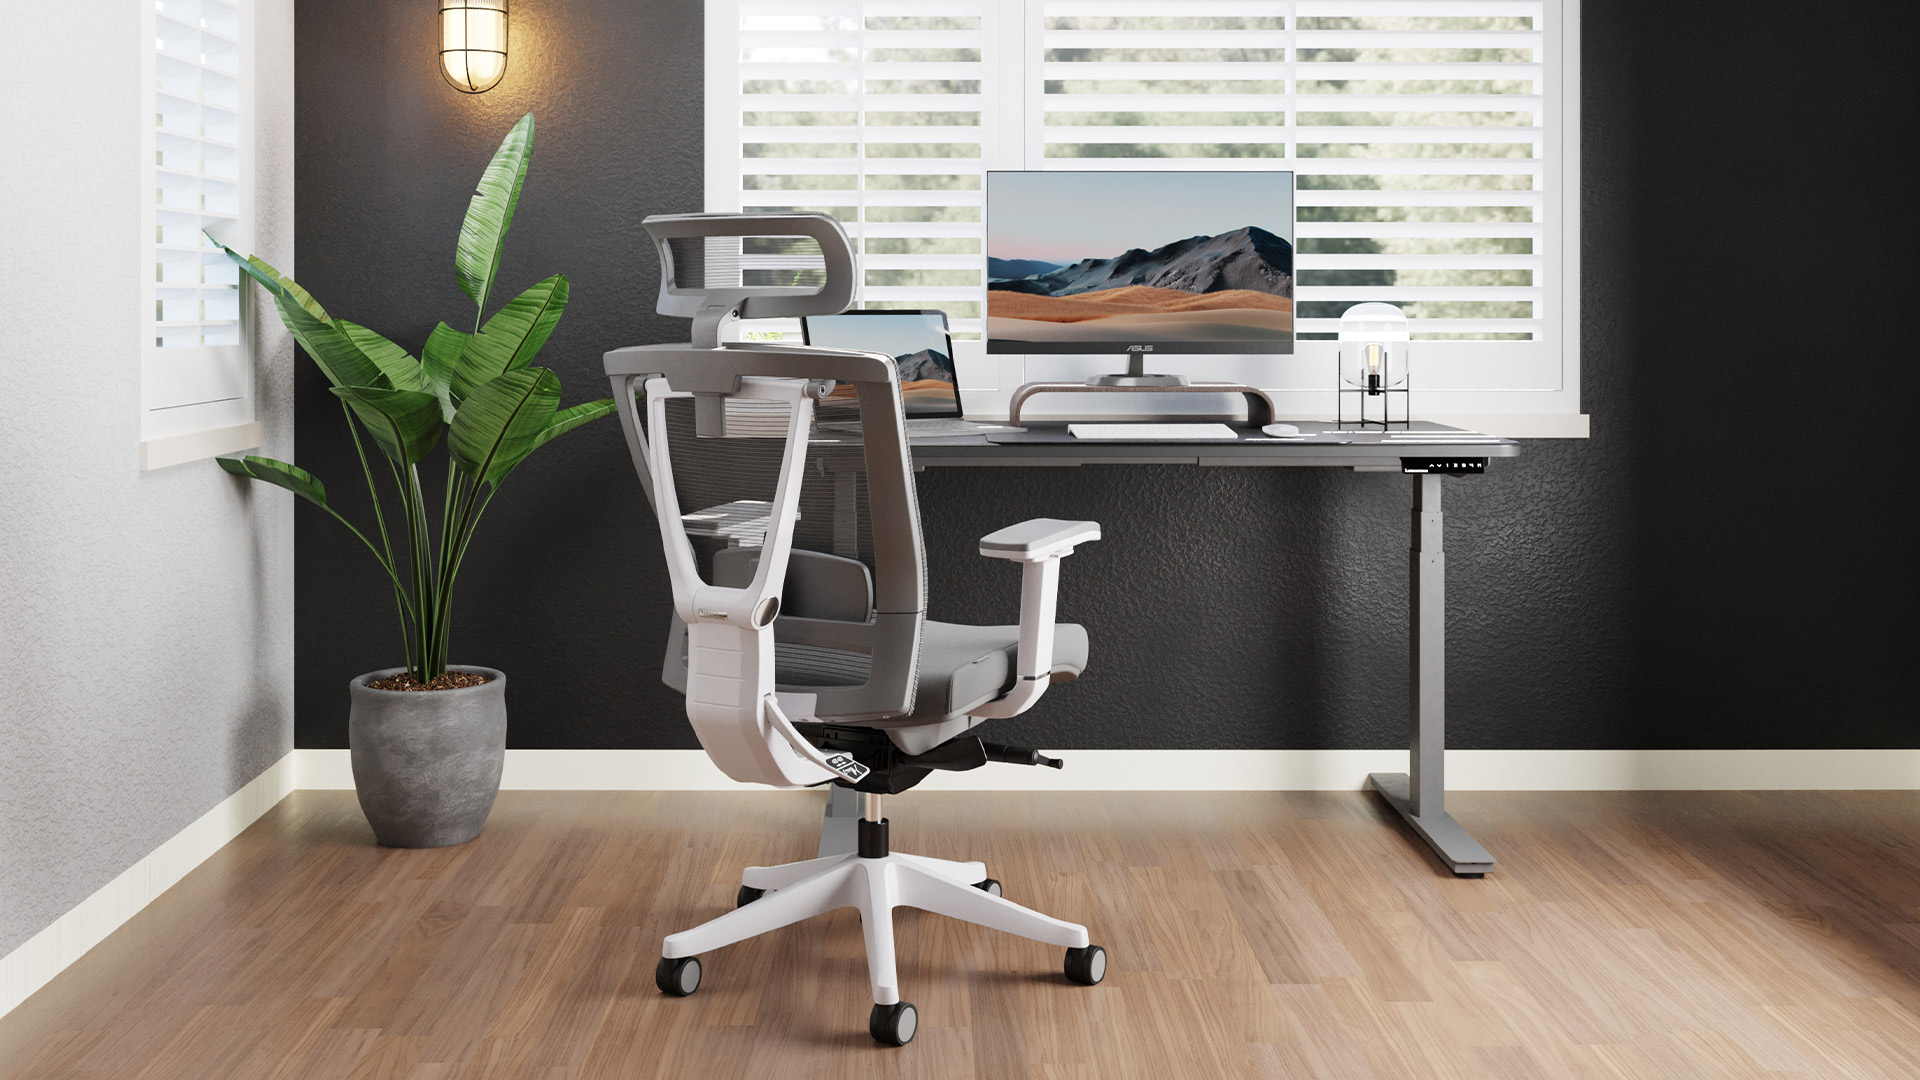 Chaise de bureau ergonomique LAMBO PRO, appui-tête, support